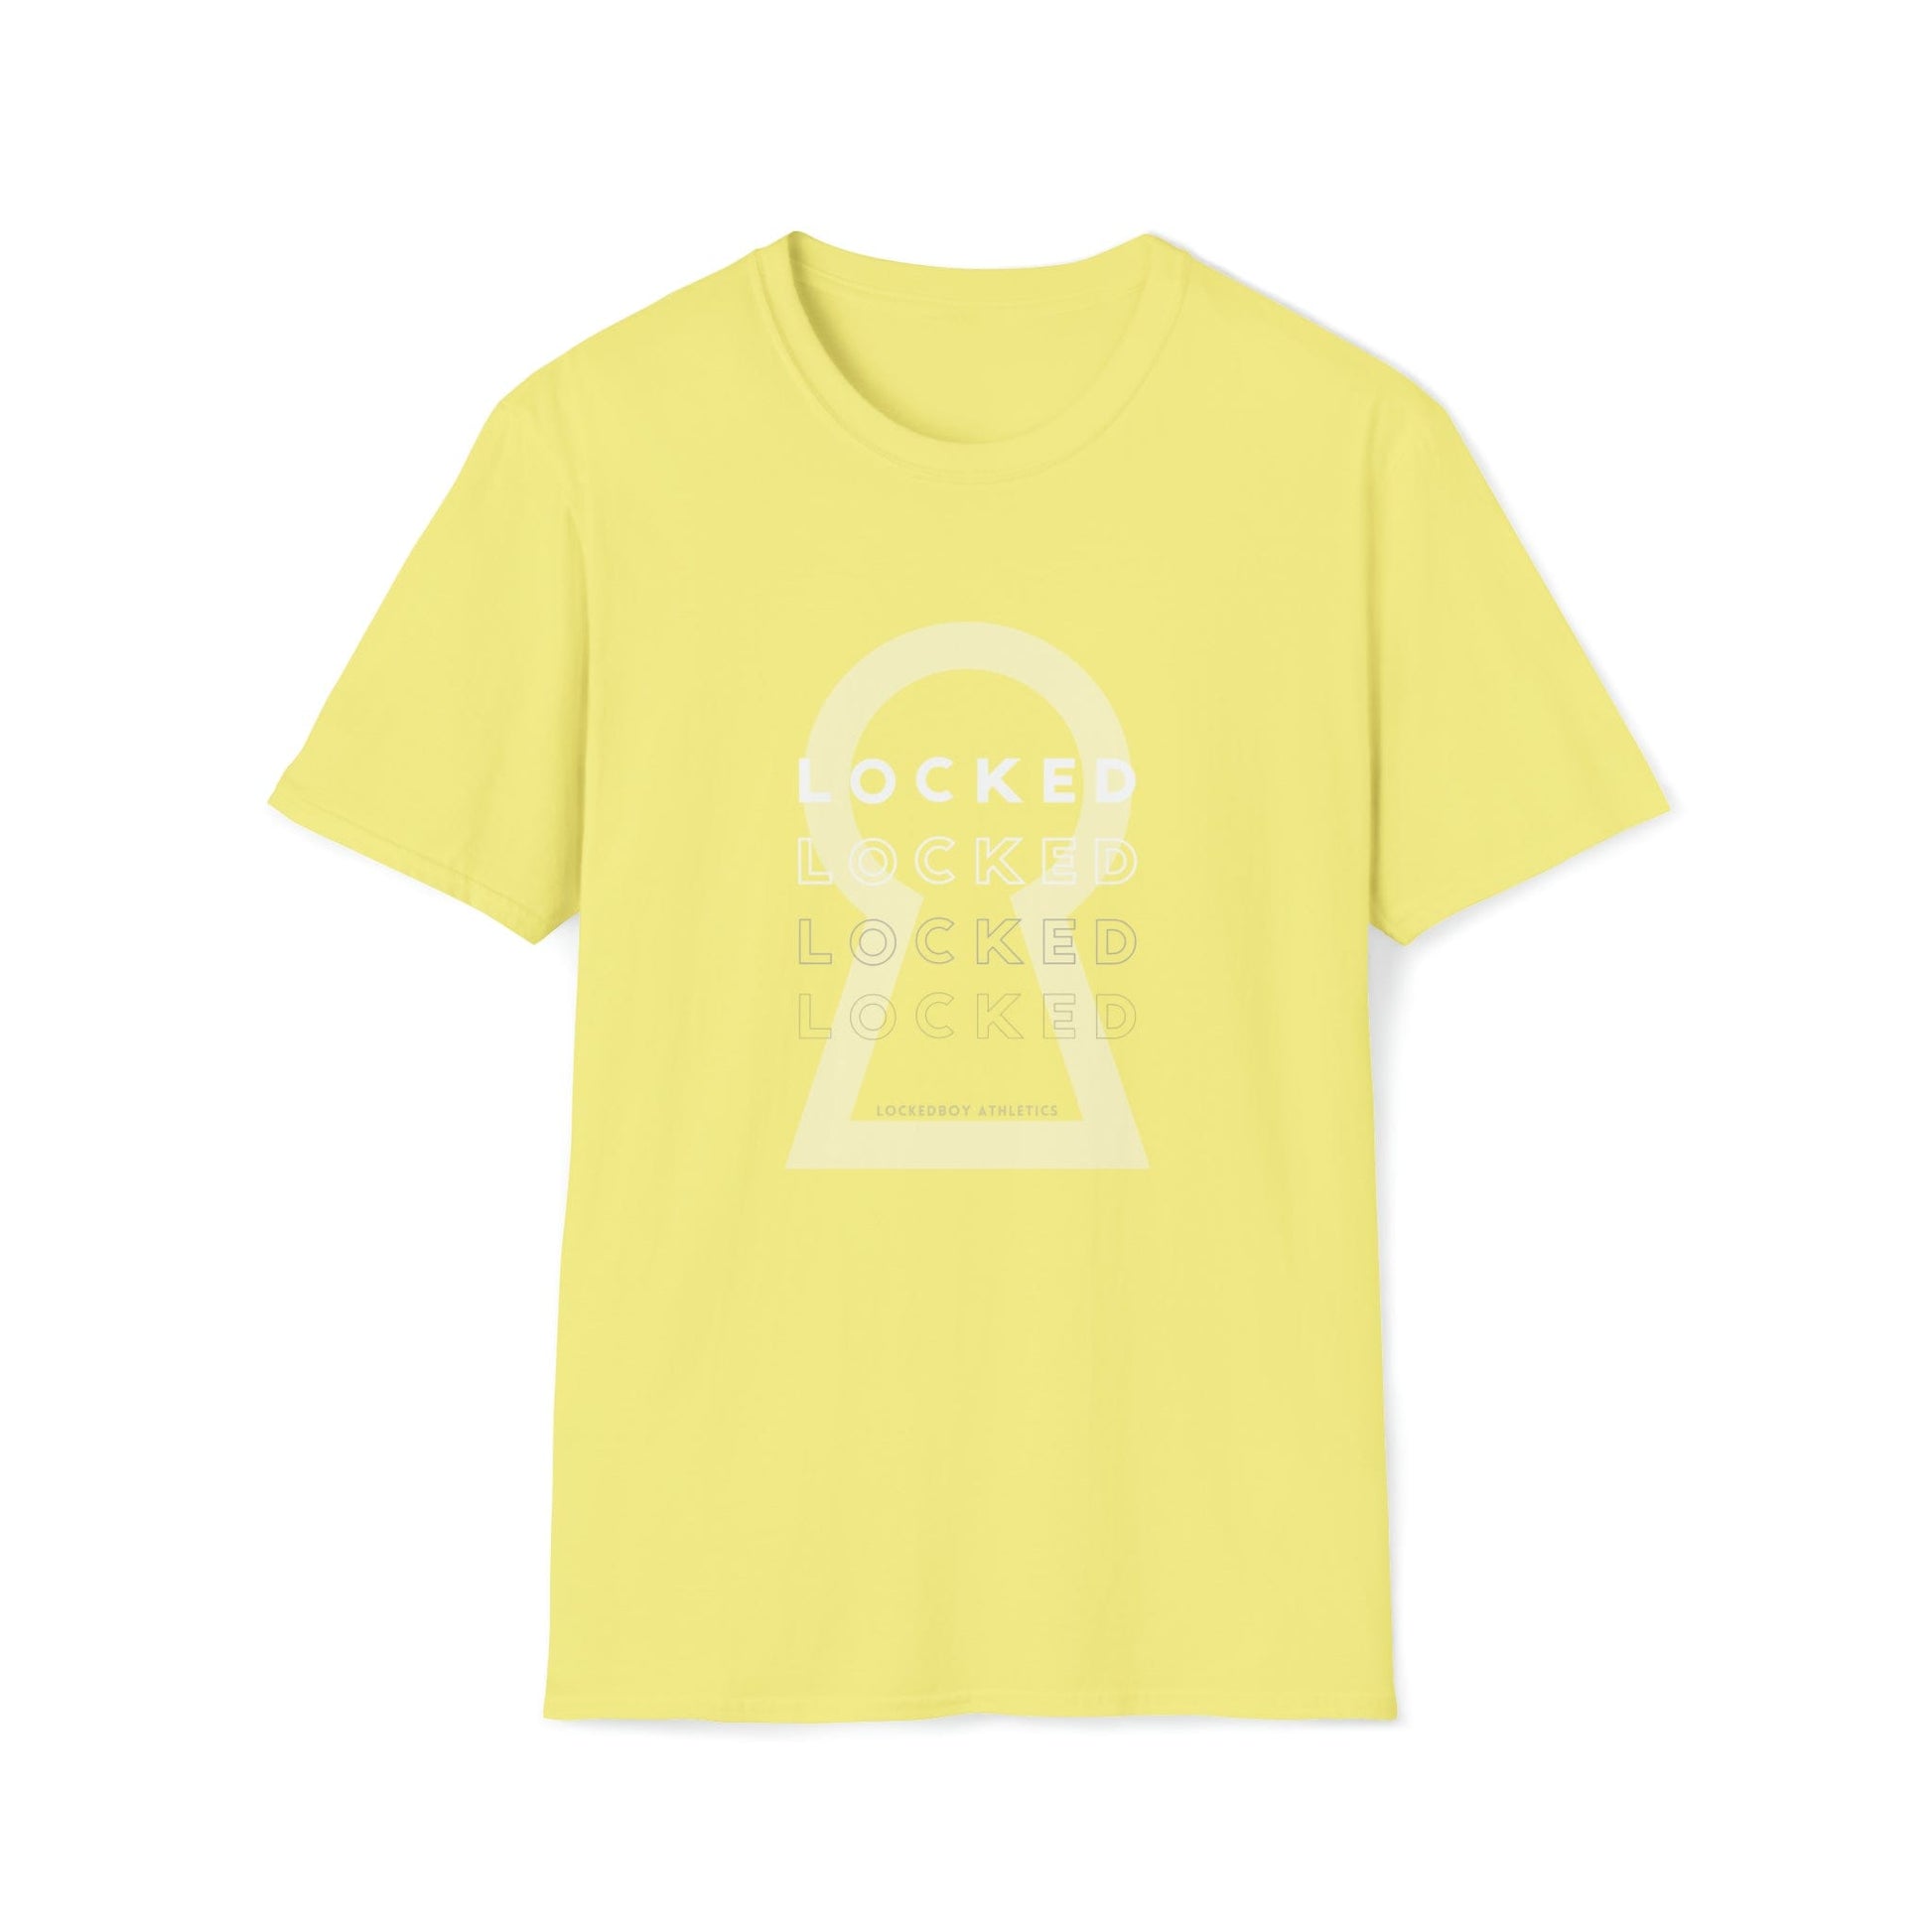 T-Shirt Cornsilk / S Lockedboy KeyHOLE Echo - Lockedboy Athletics Chastity Tshirt LEATHERDADDY BATOR